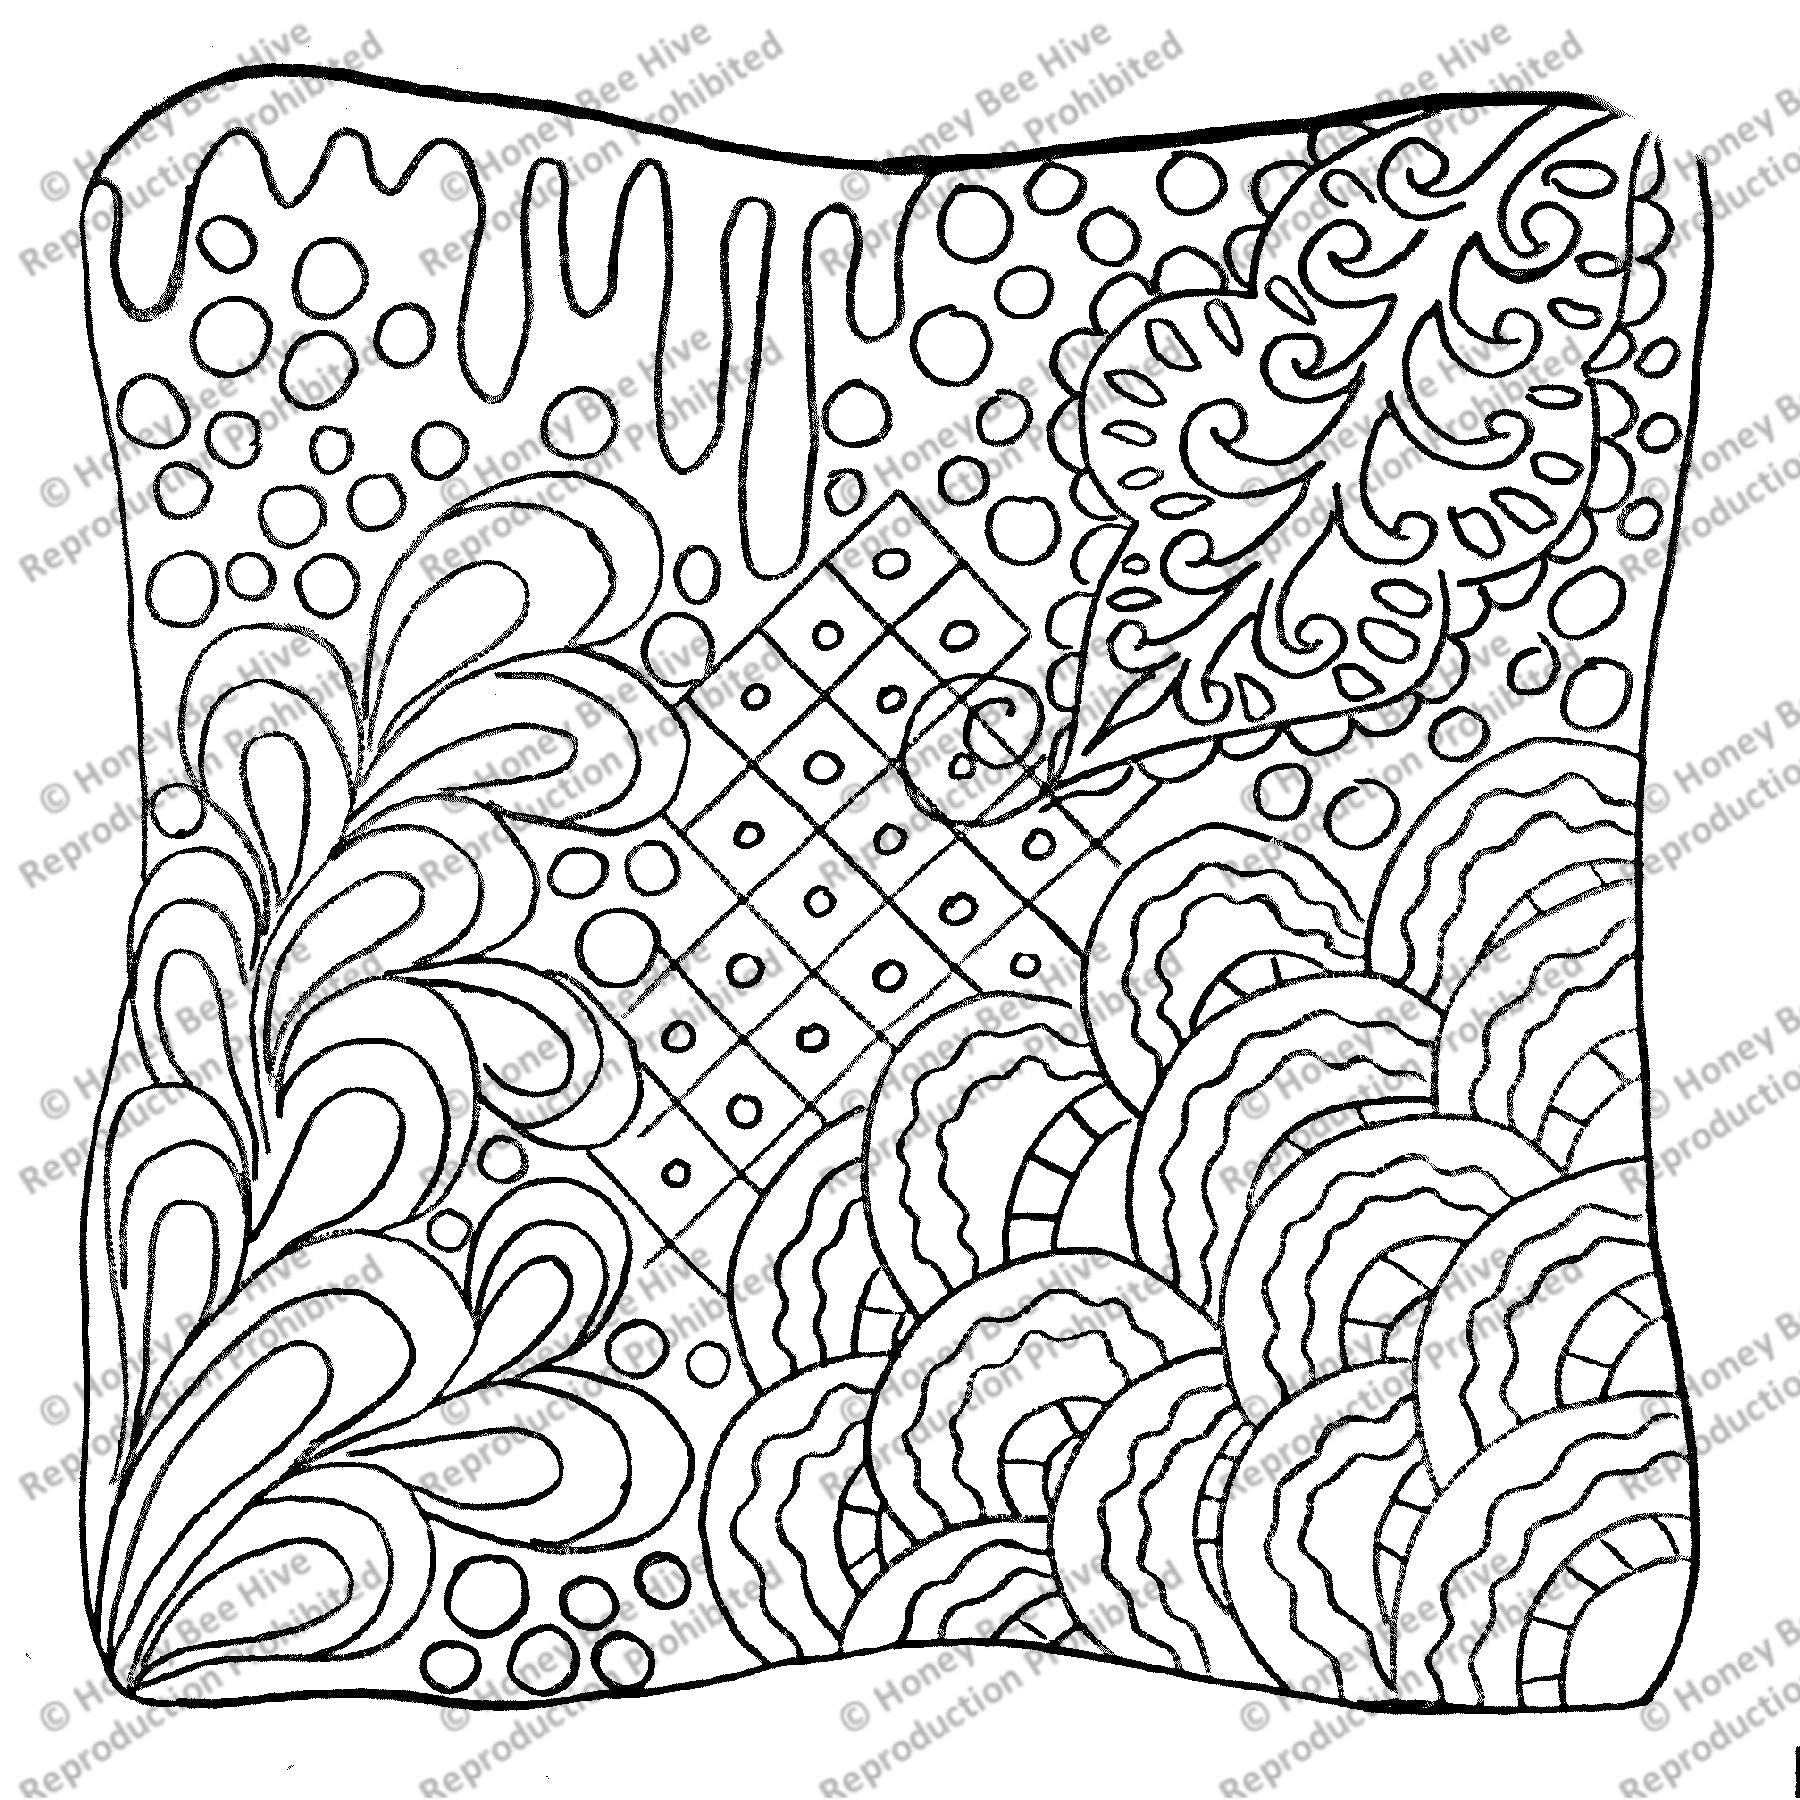 Zen Doodle, rug hooking pattern